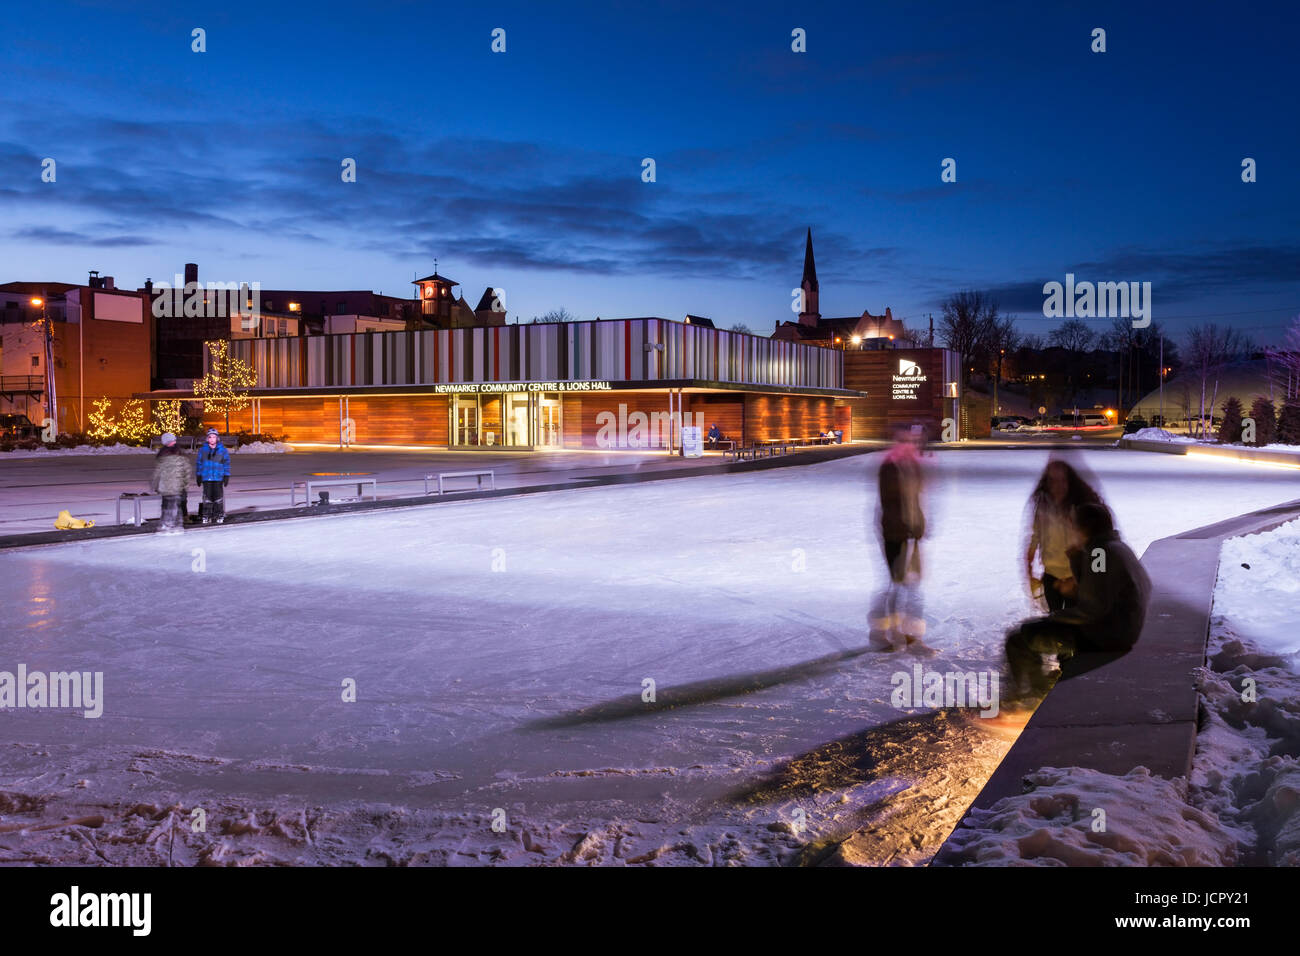 Le Centre communautaire de Newmarket en hiver avec les gens, les patineurs sur glace au crépuscule dans le centre-ville de Toronto, la région de York, Ontario, Canada. Banque D'Images